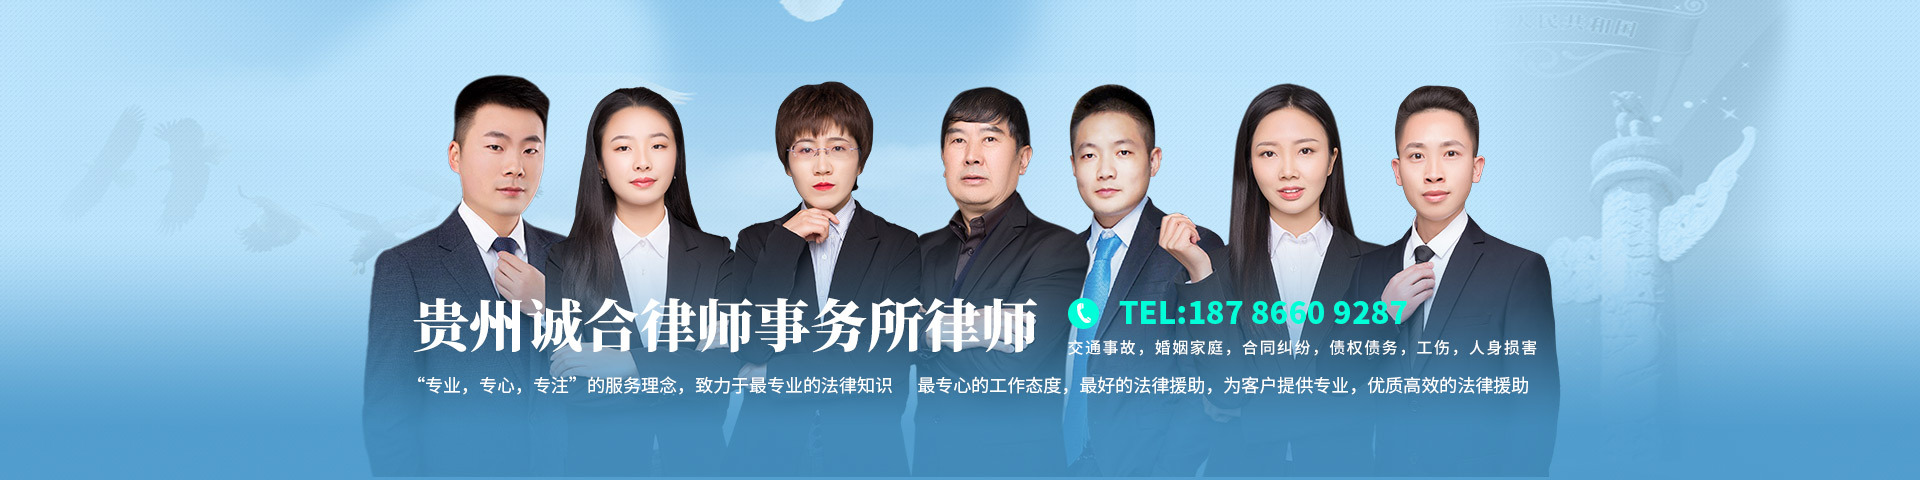 贵州诚合律师事务所的律师团队网站